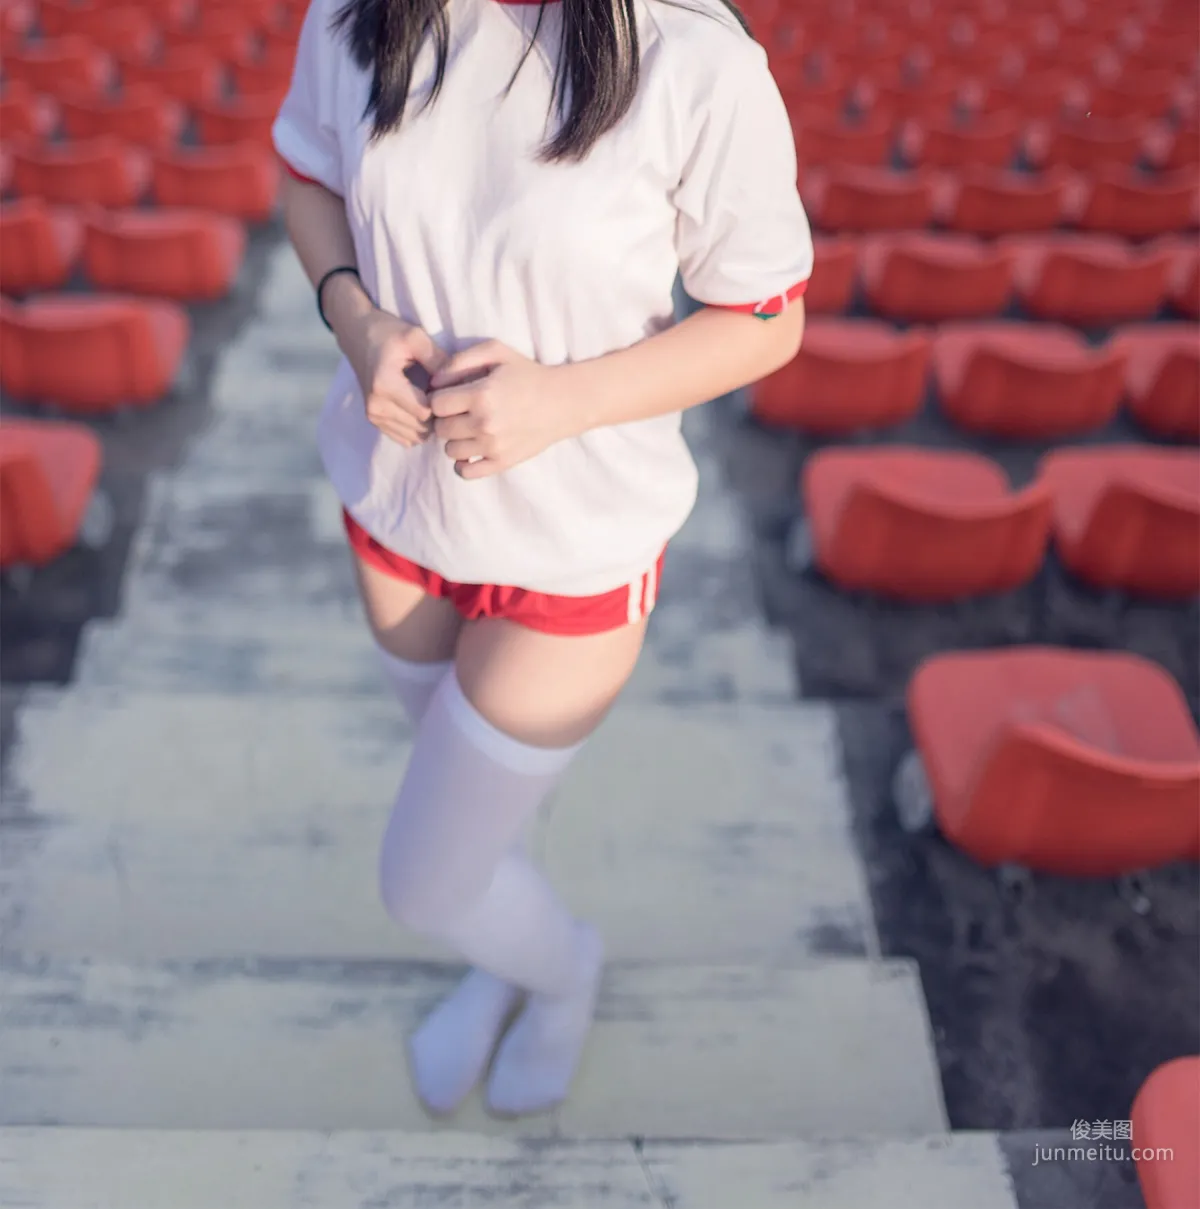 [风之领域] NO.112 运动场上的白丝体操服少女 写真集43